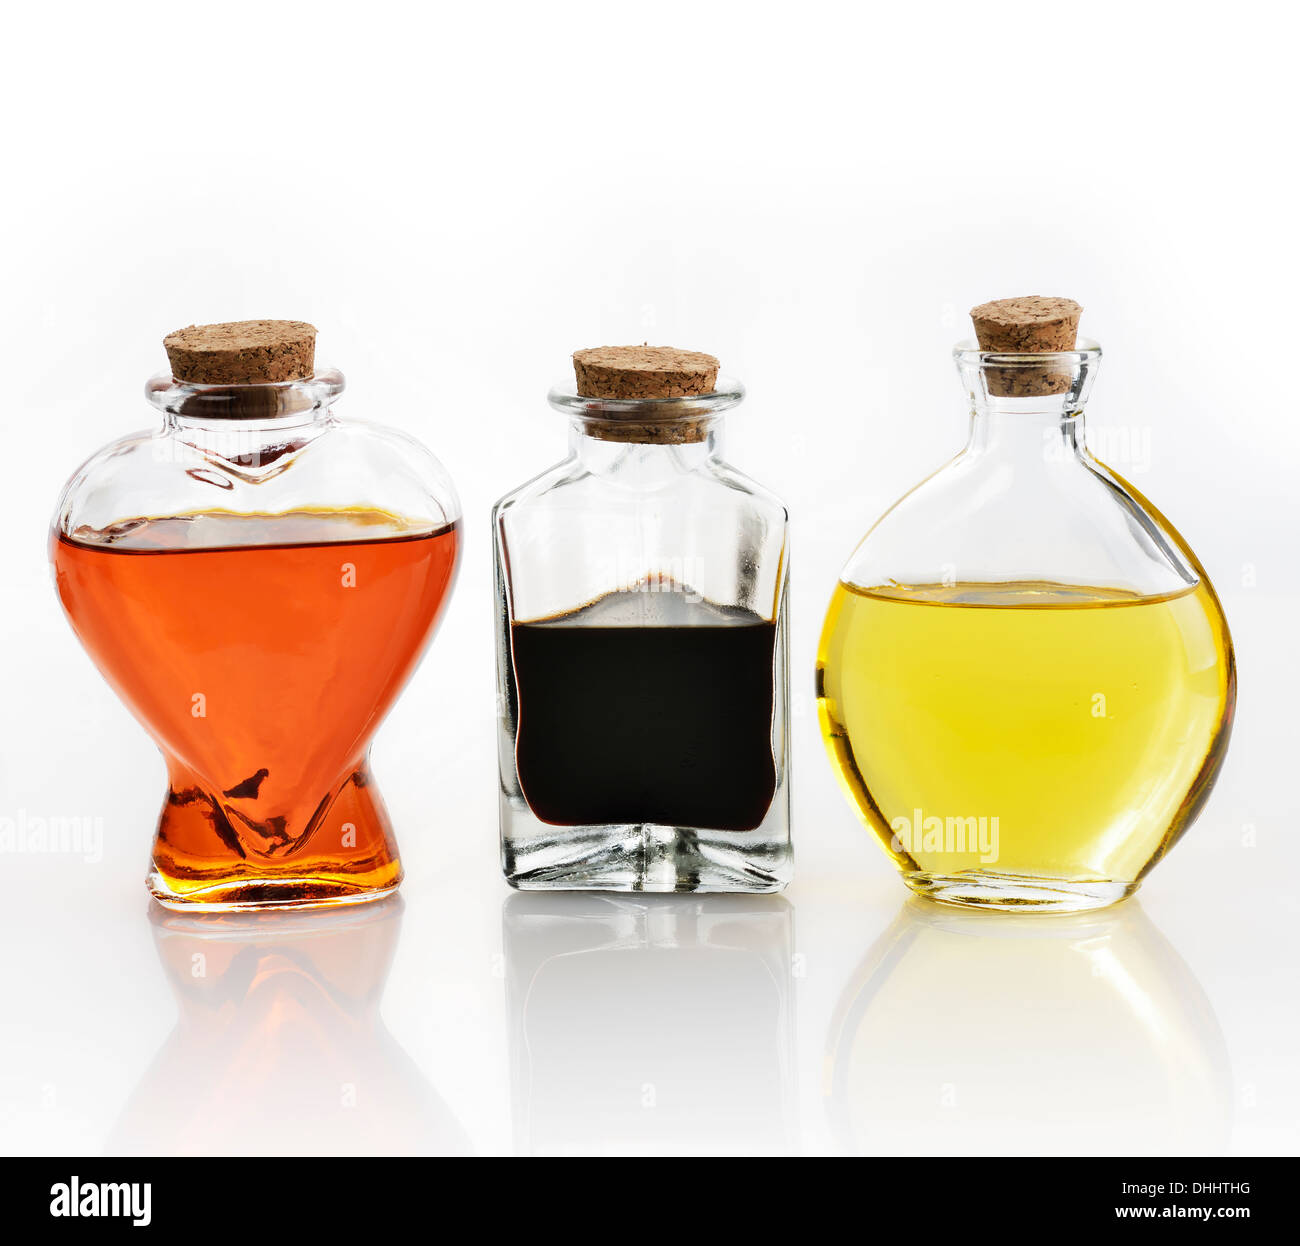 Glass Bottles Of Oil And Vinegar On White Background Stock Photo